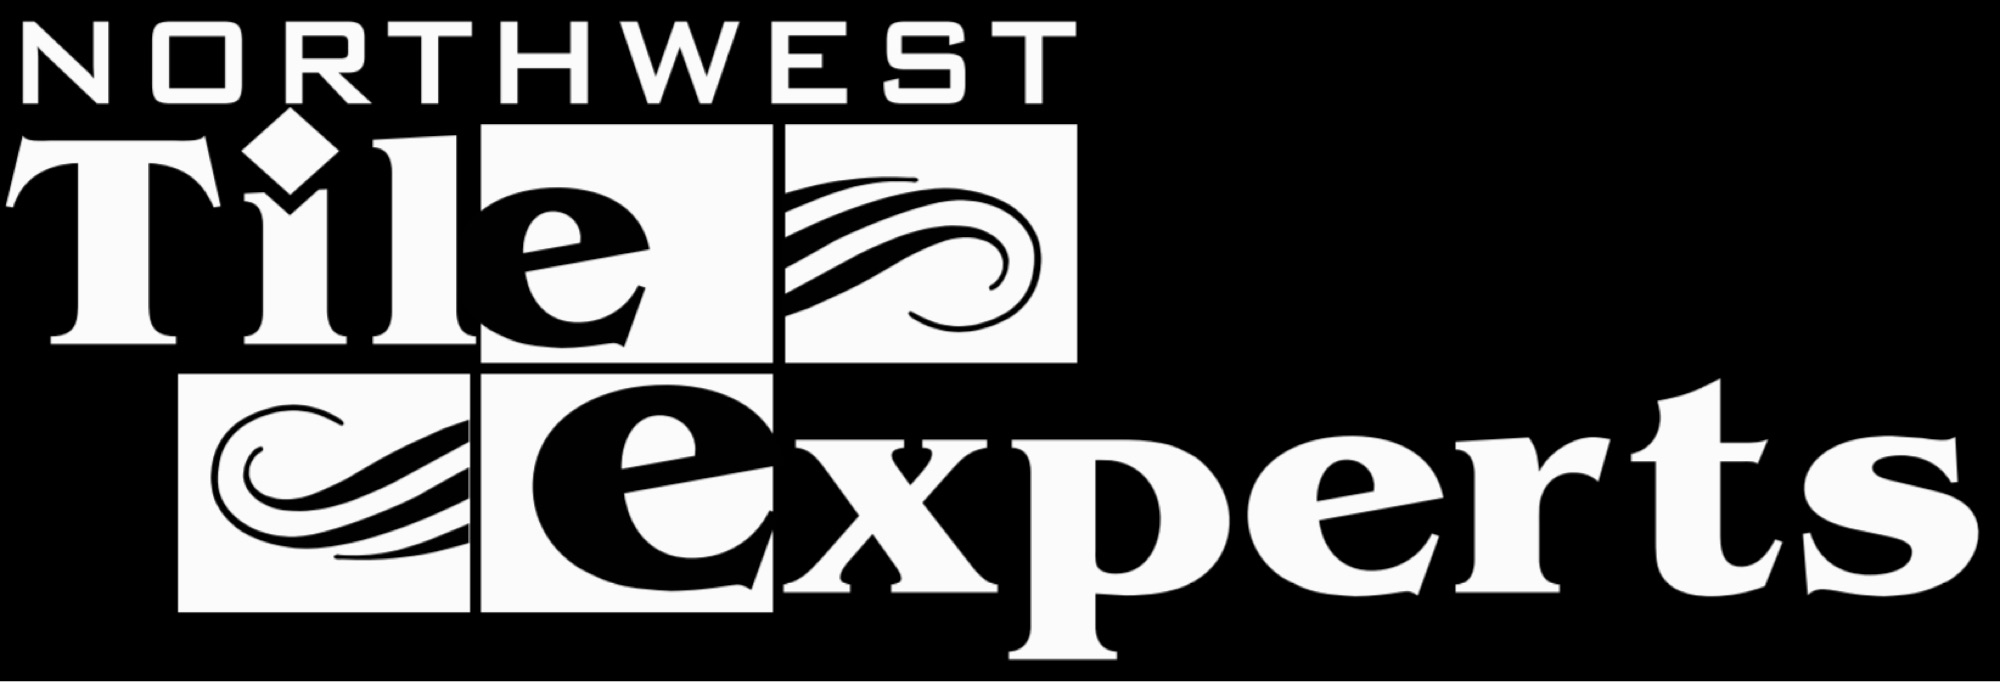 Northwest Tile Experts Logo